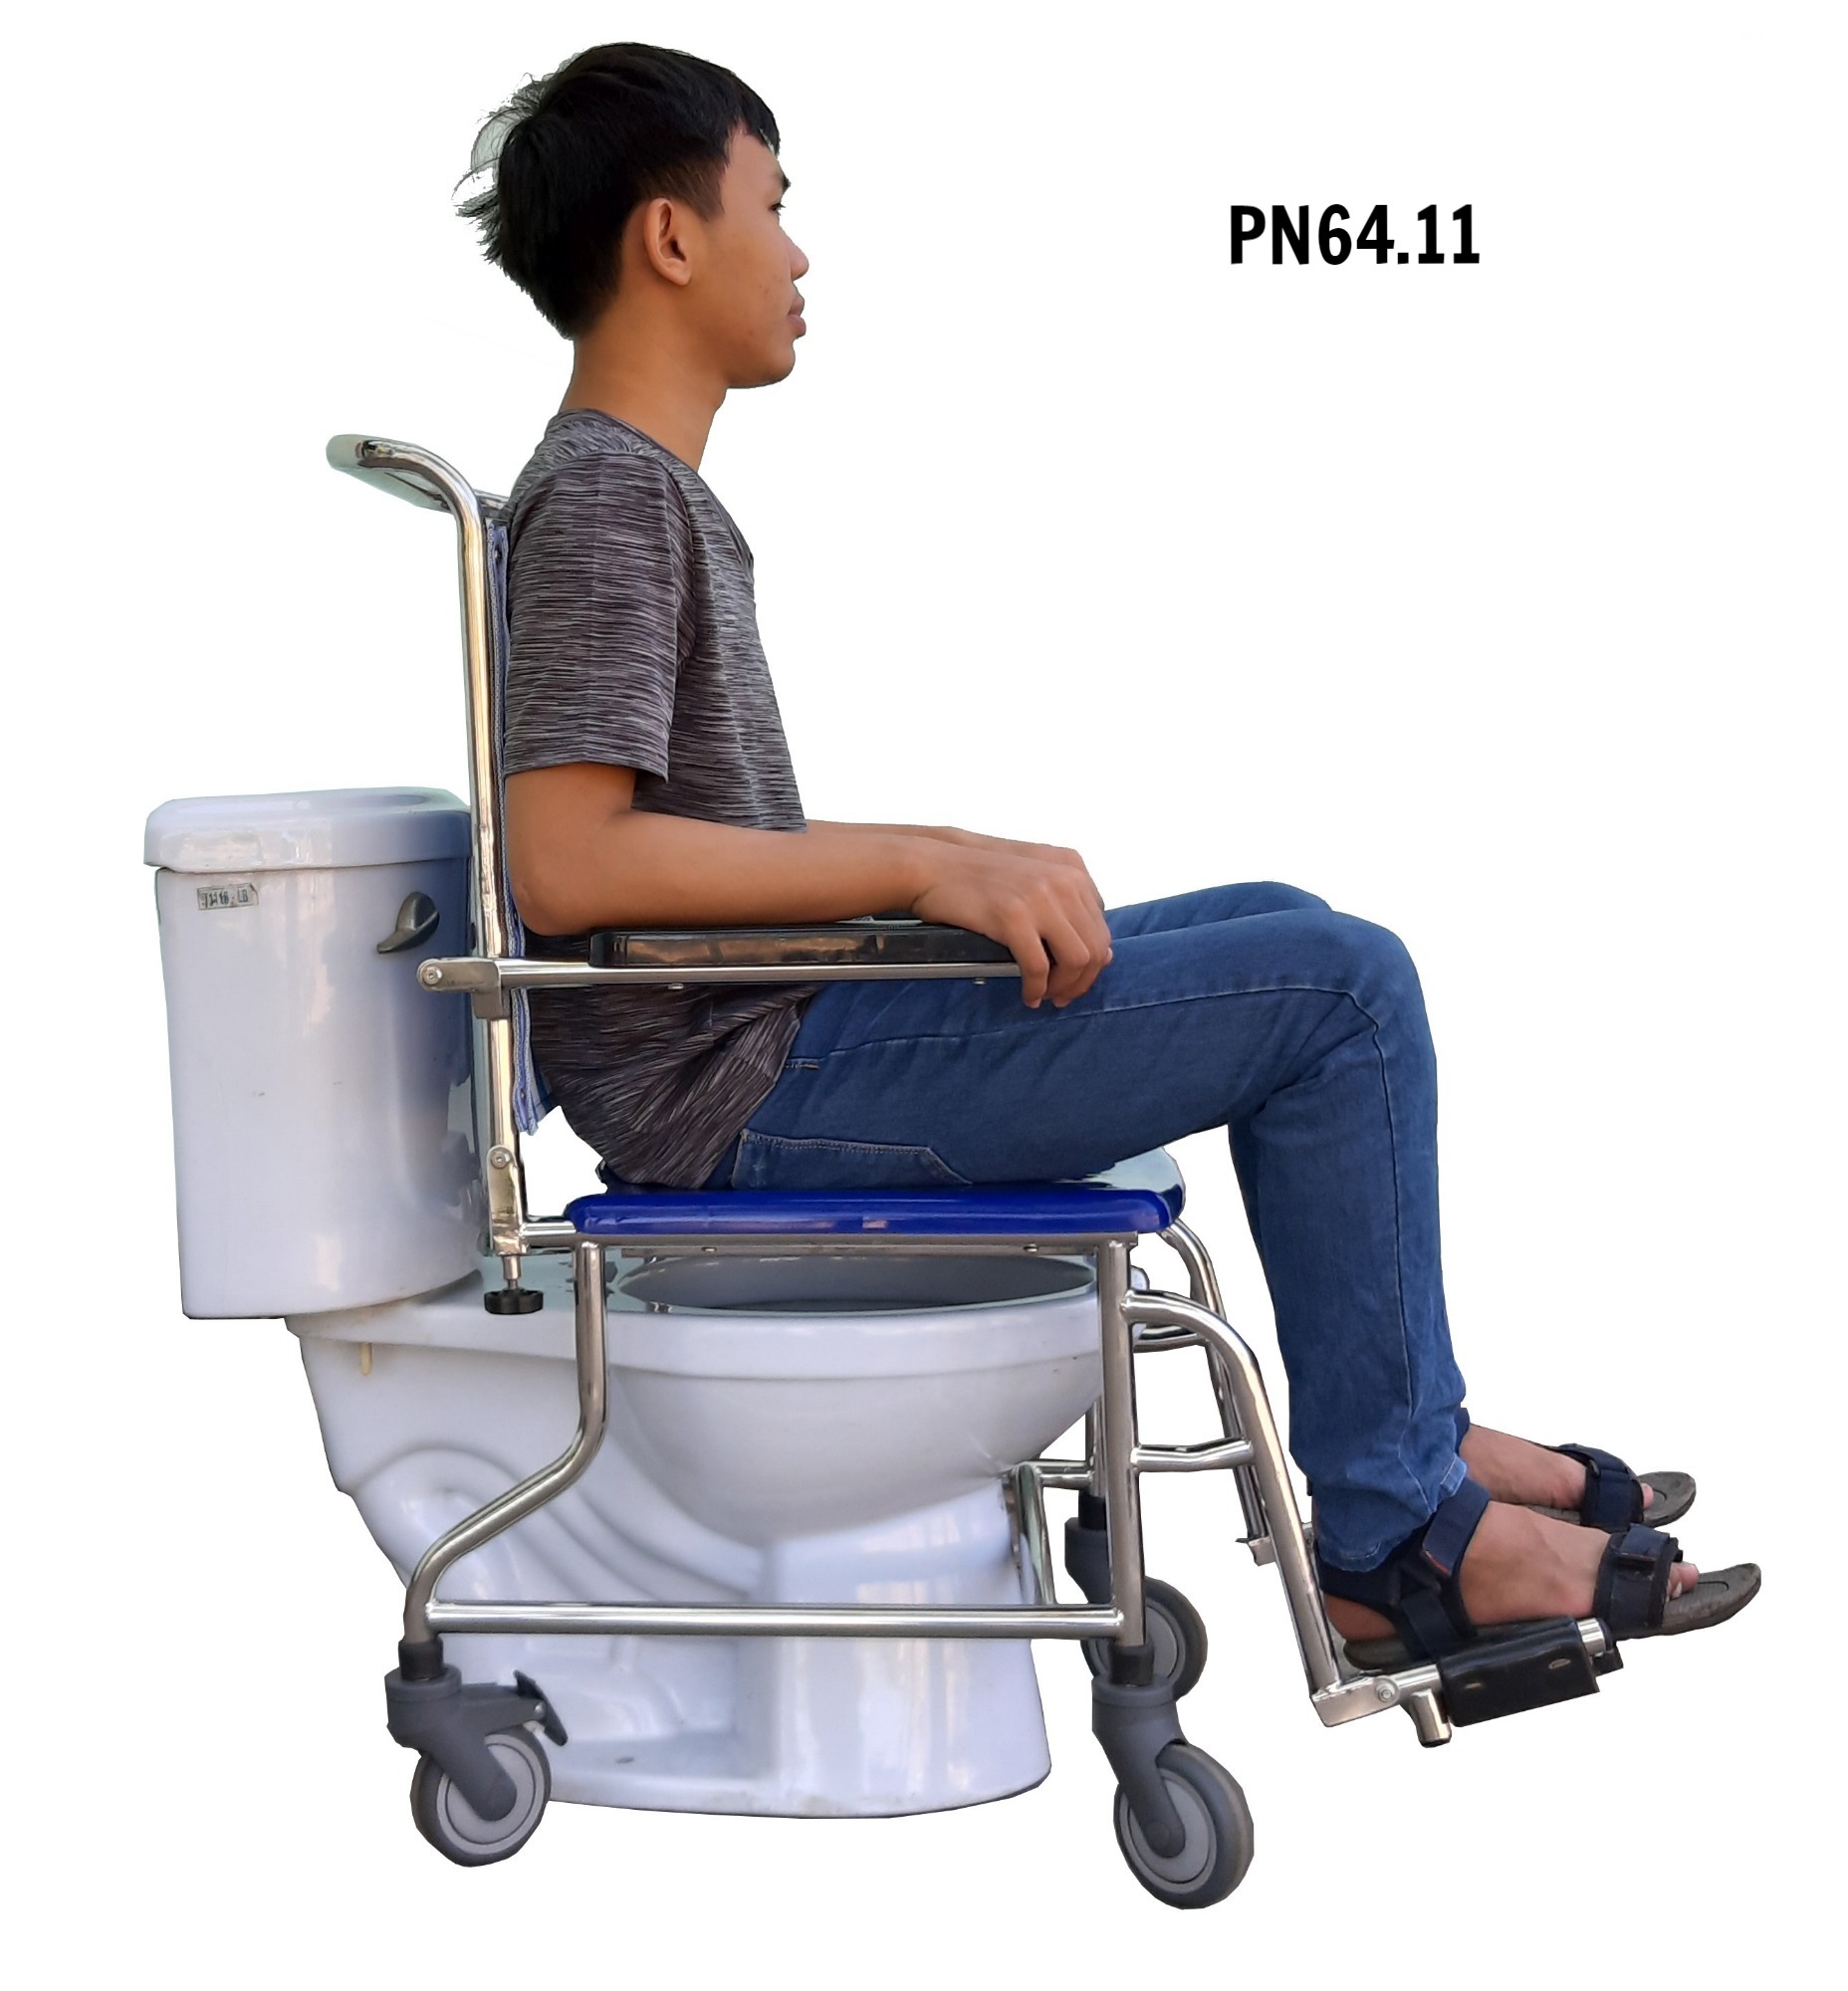 PN64.11 - Ghế vệ sinh inox có bánh xe mẫu 2